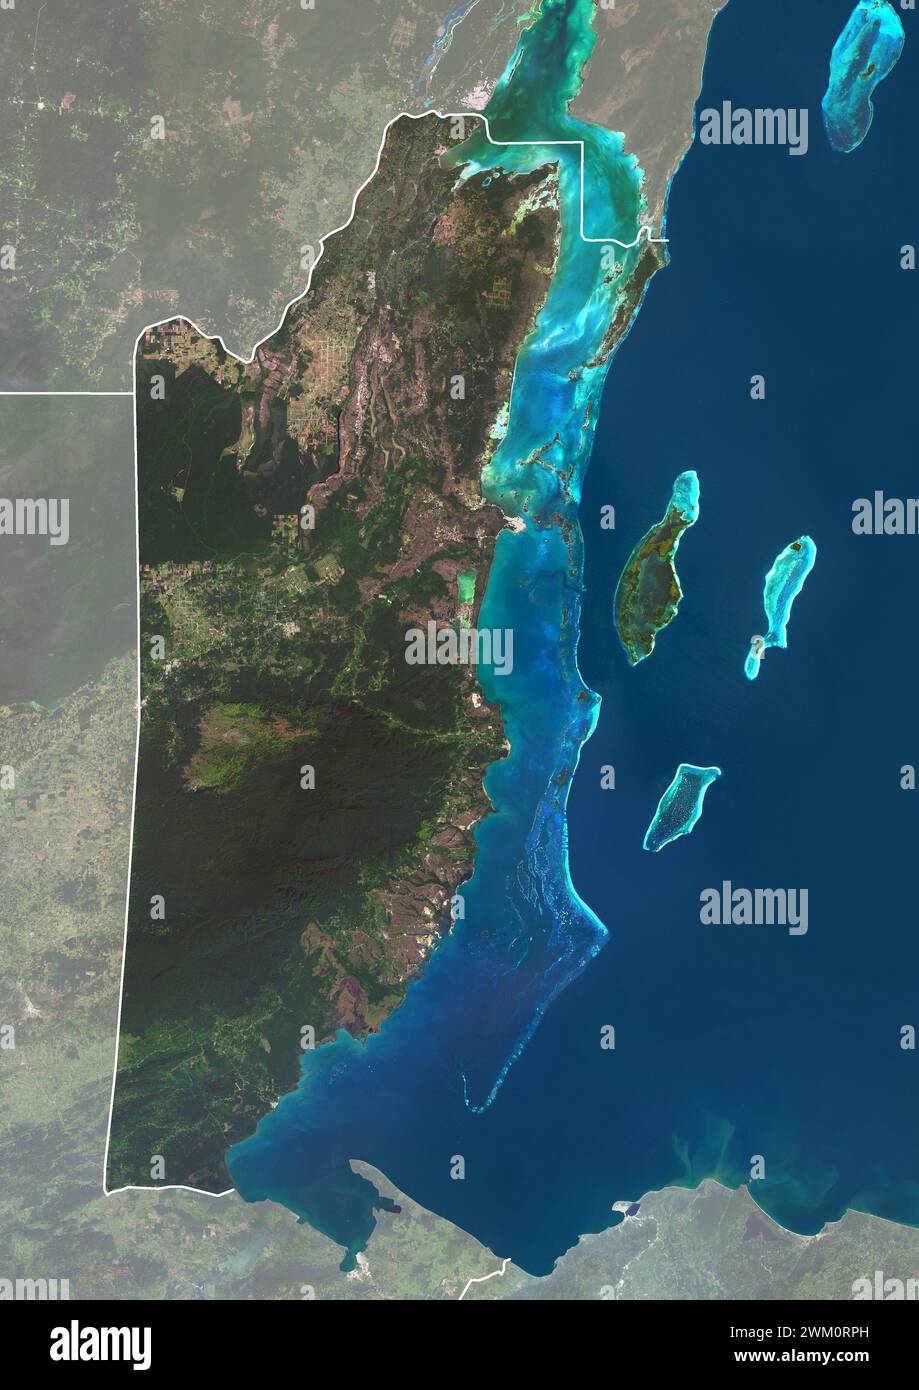 Immagine satellitare a colori del Belize, con bordi e maschera. La barriera corallina del Belize corre per circa 190 miglia (300 km) lungo la costa caraibica del Belize. Foto Stock